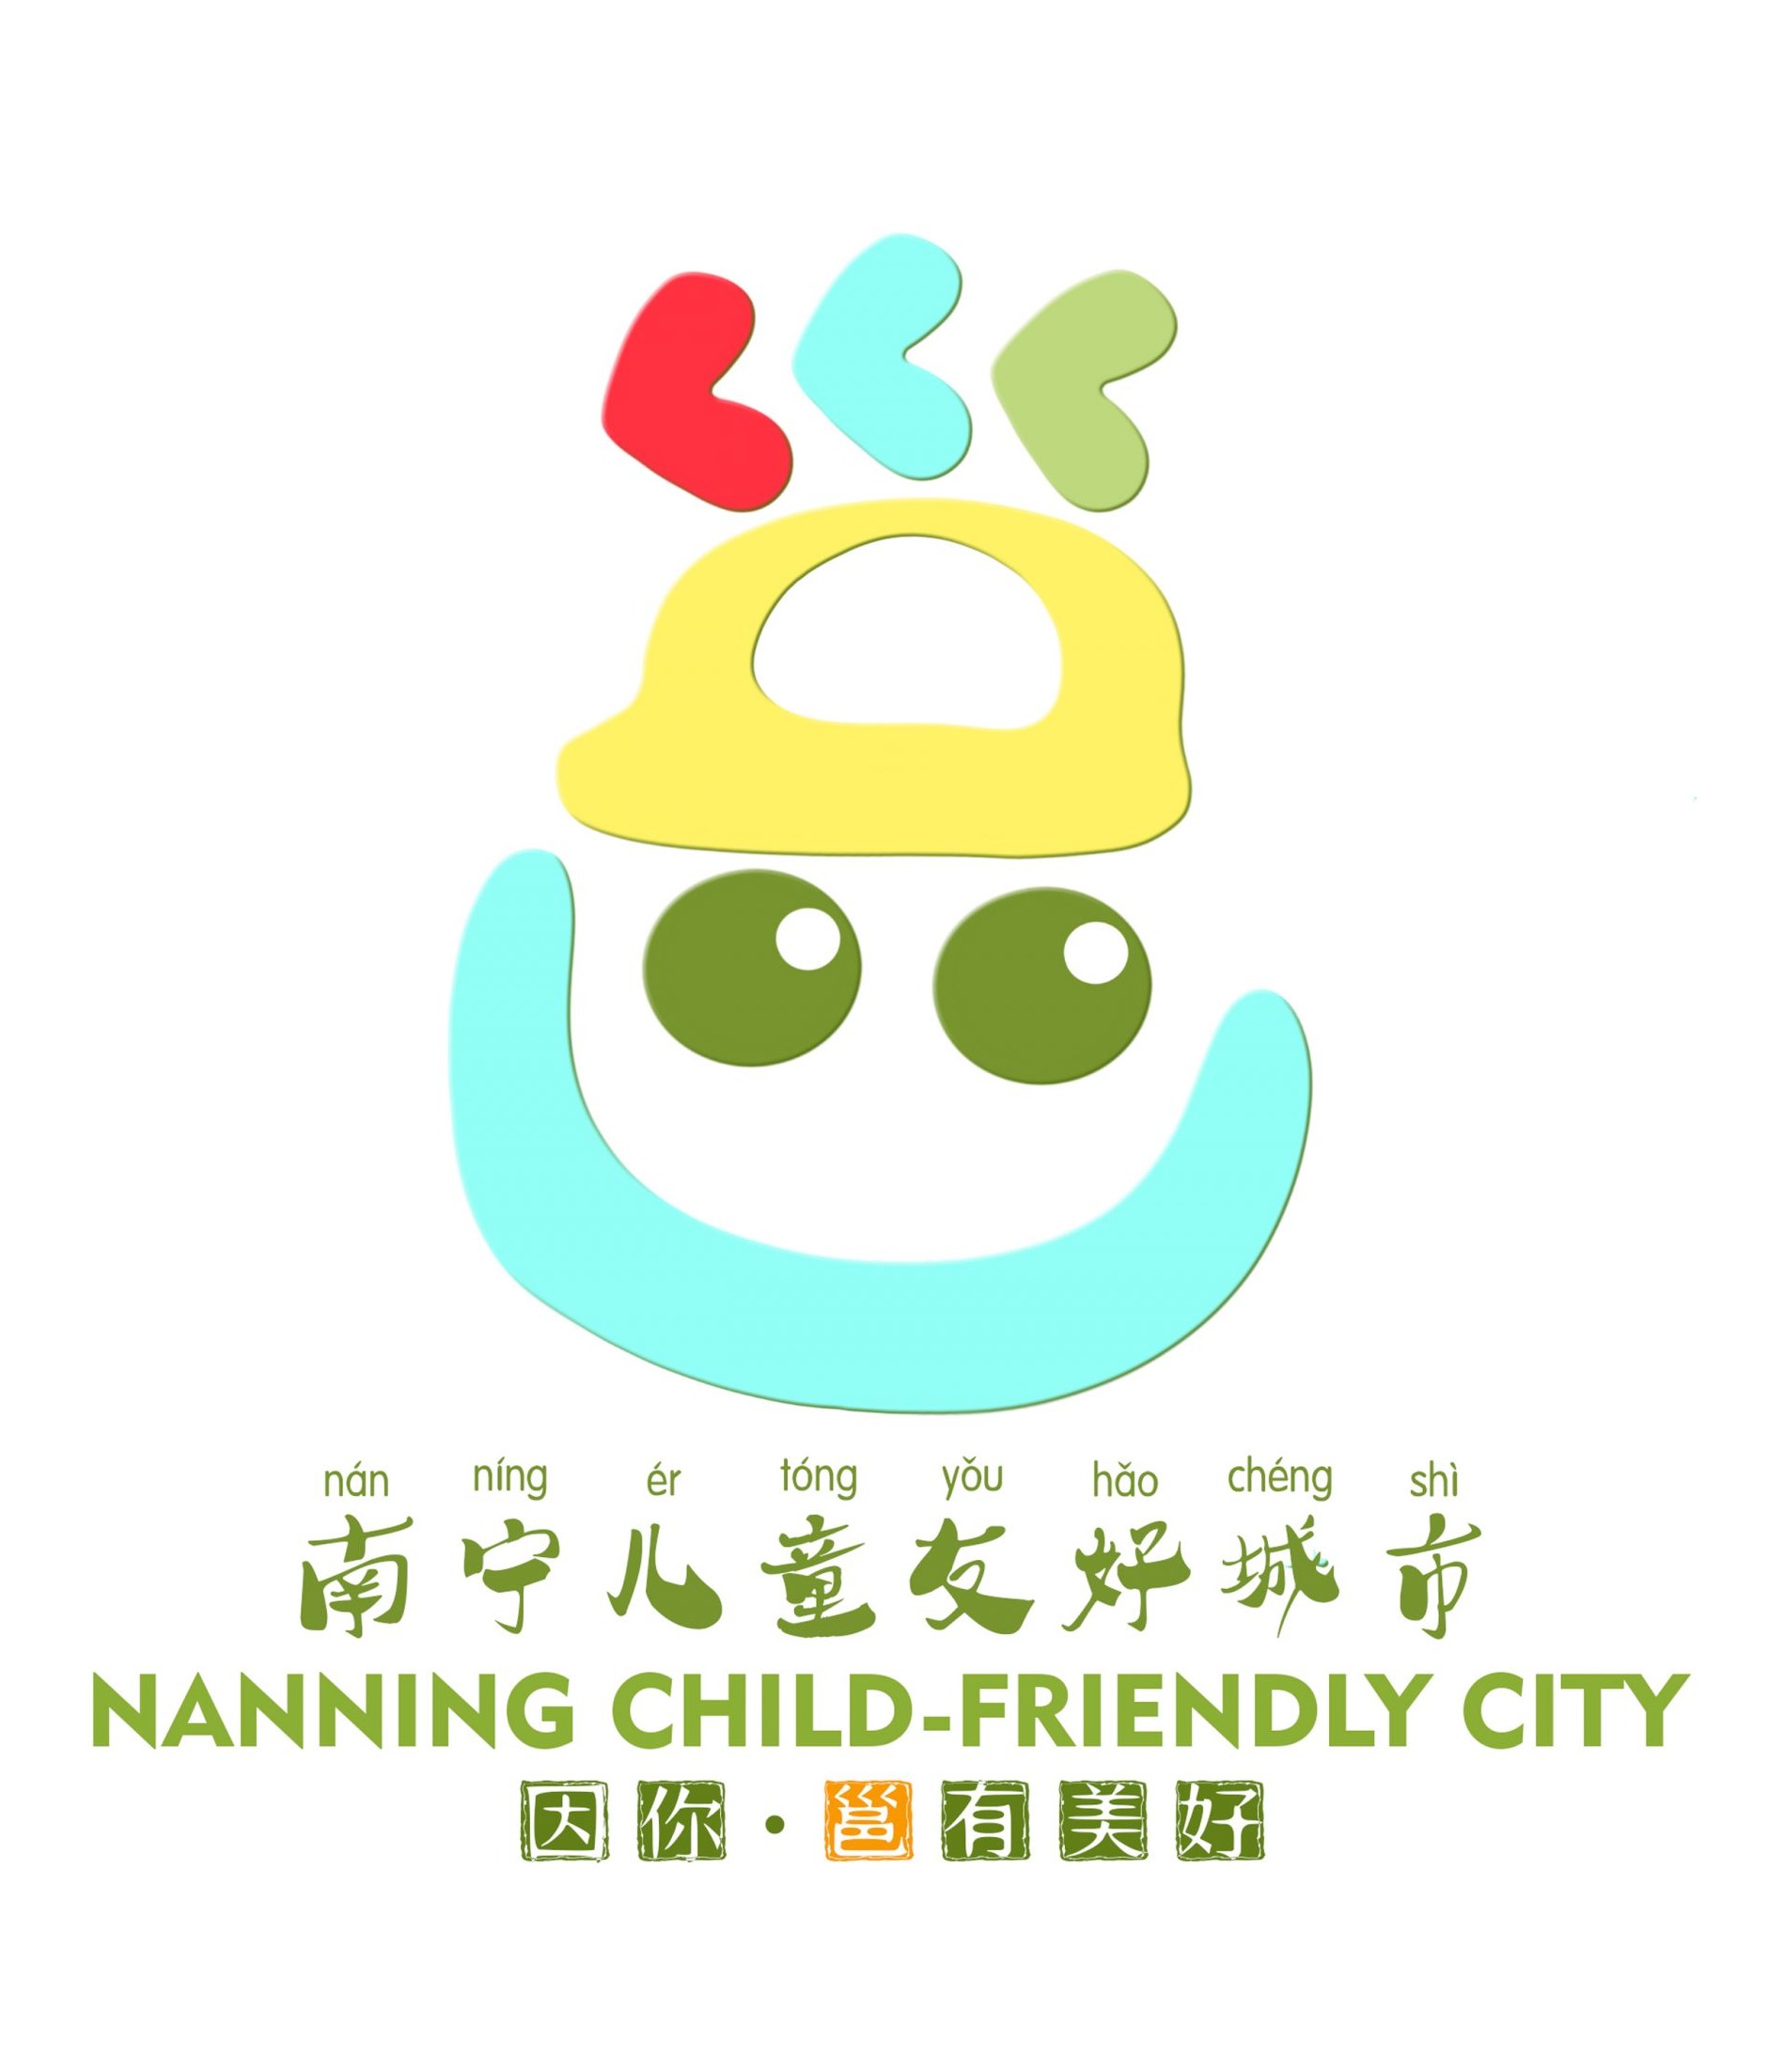 公示 | 南宁市儿童友好城市logo、宣传口号征集评选结果公示